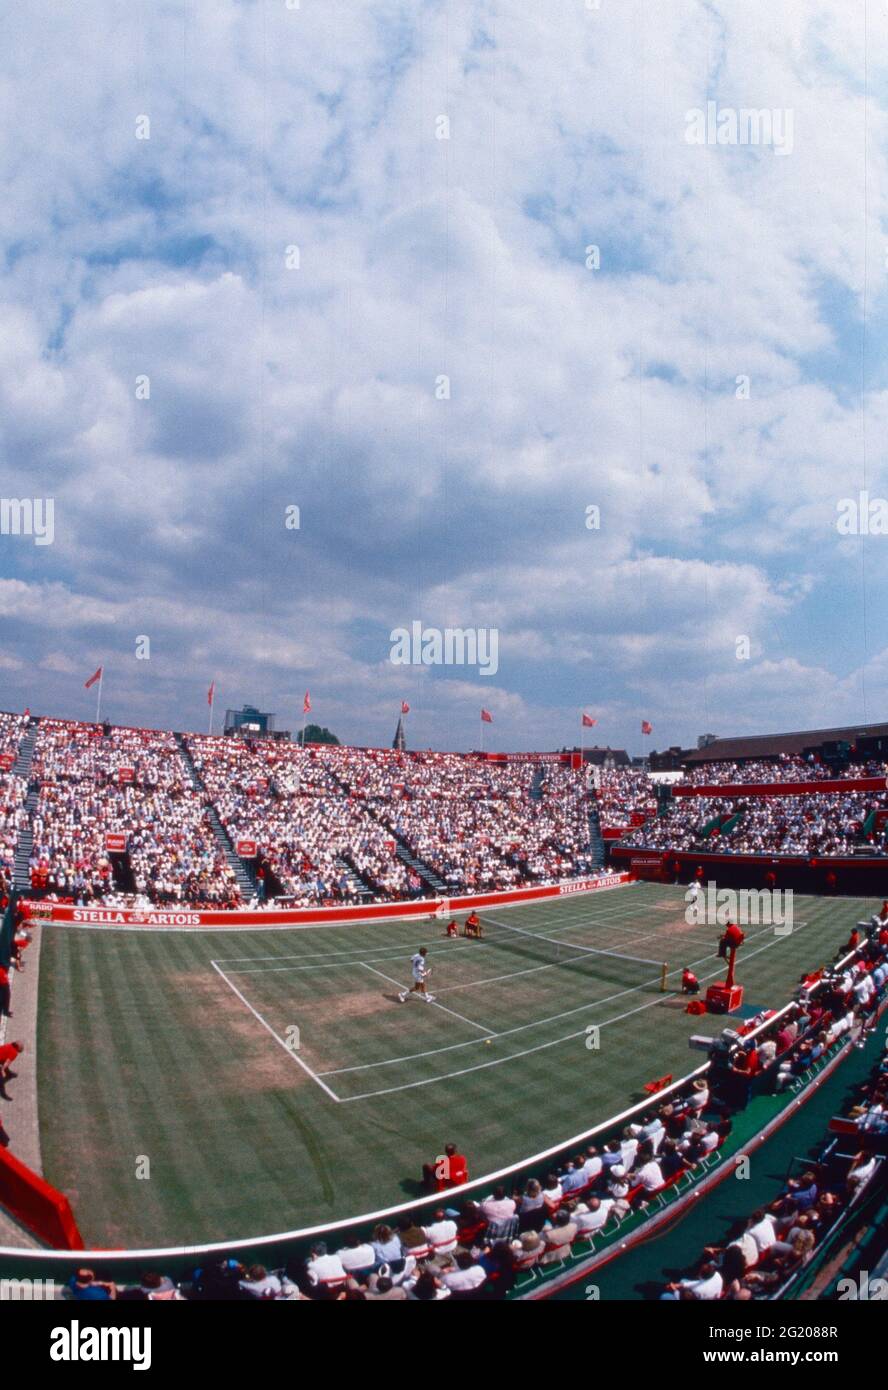 Torneo de tenis Stella Artois en el Queen's Club, Londres, Reino Unido 1994 Foto de stock